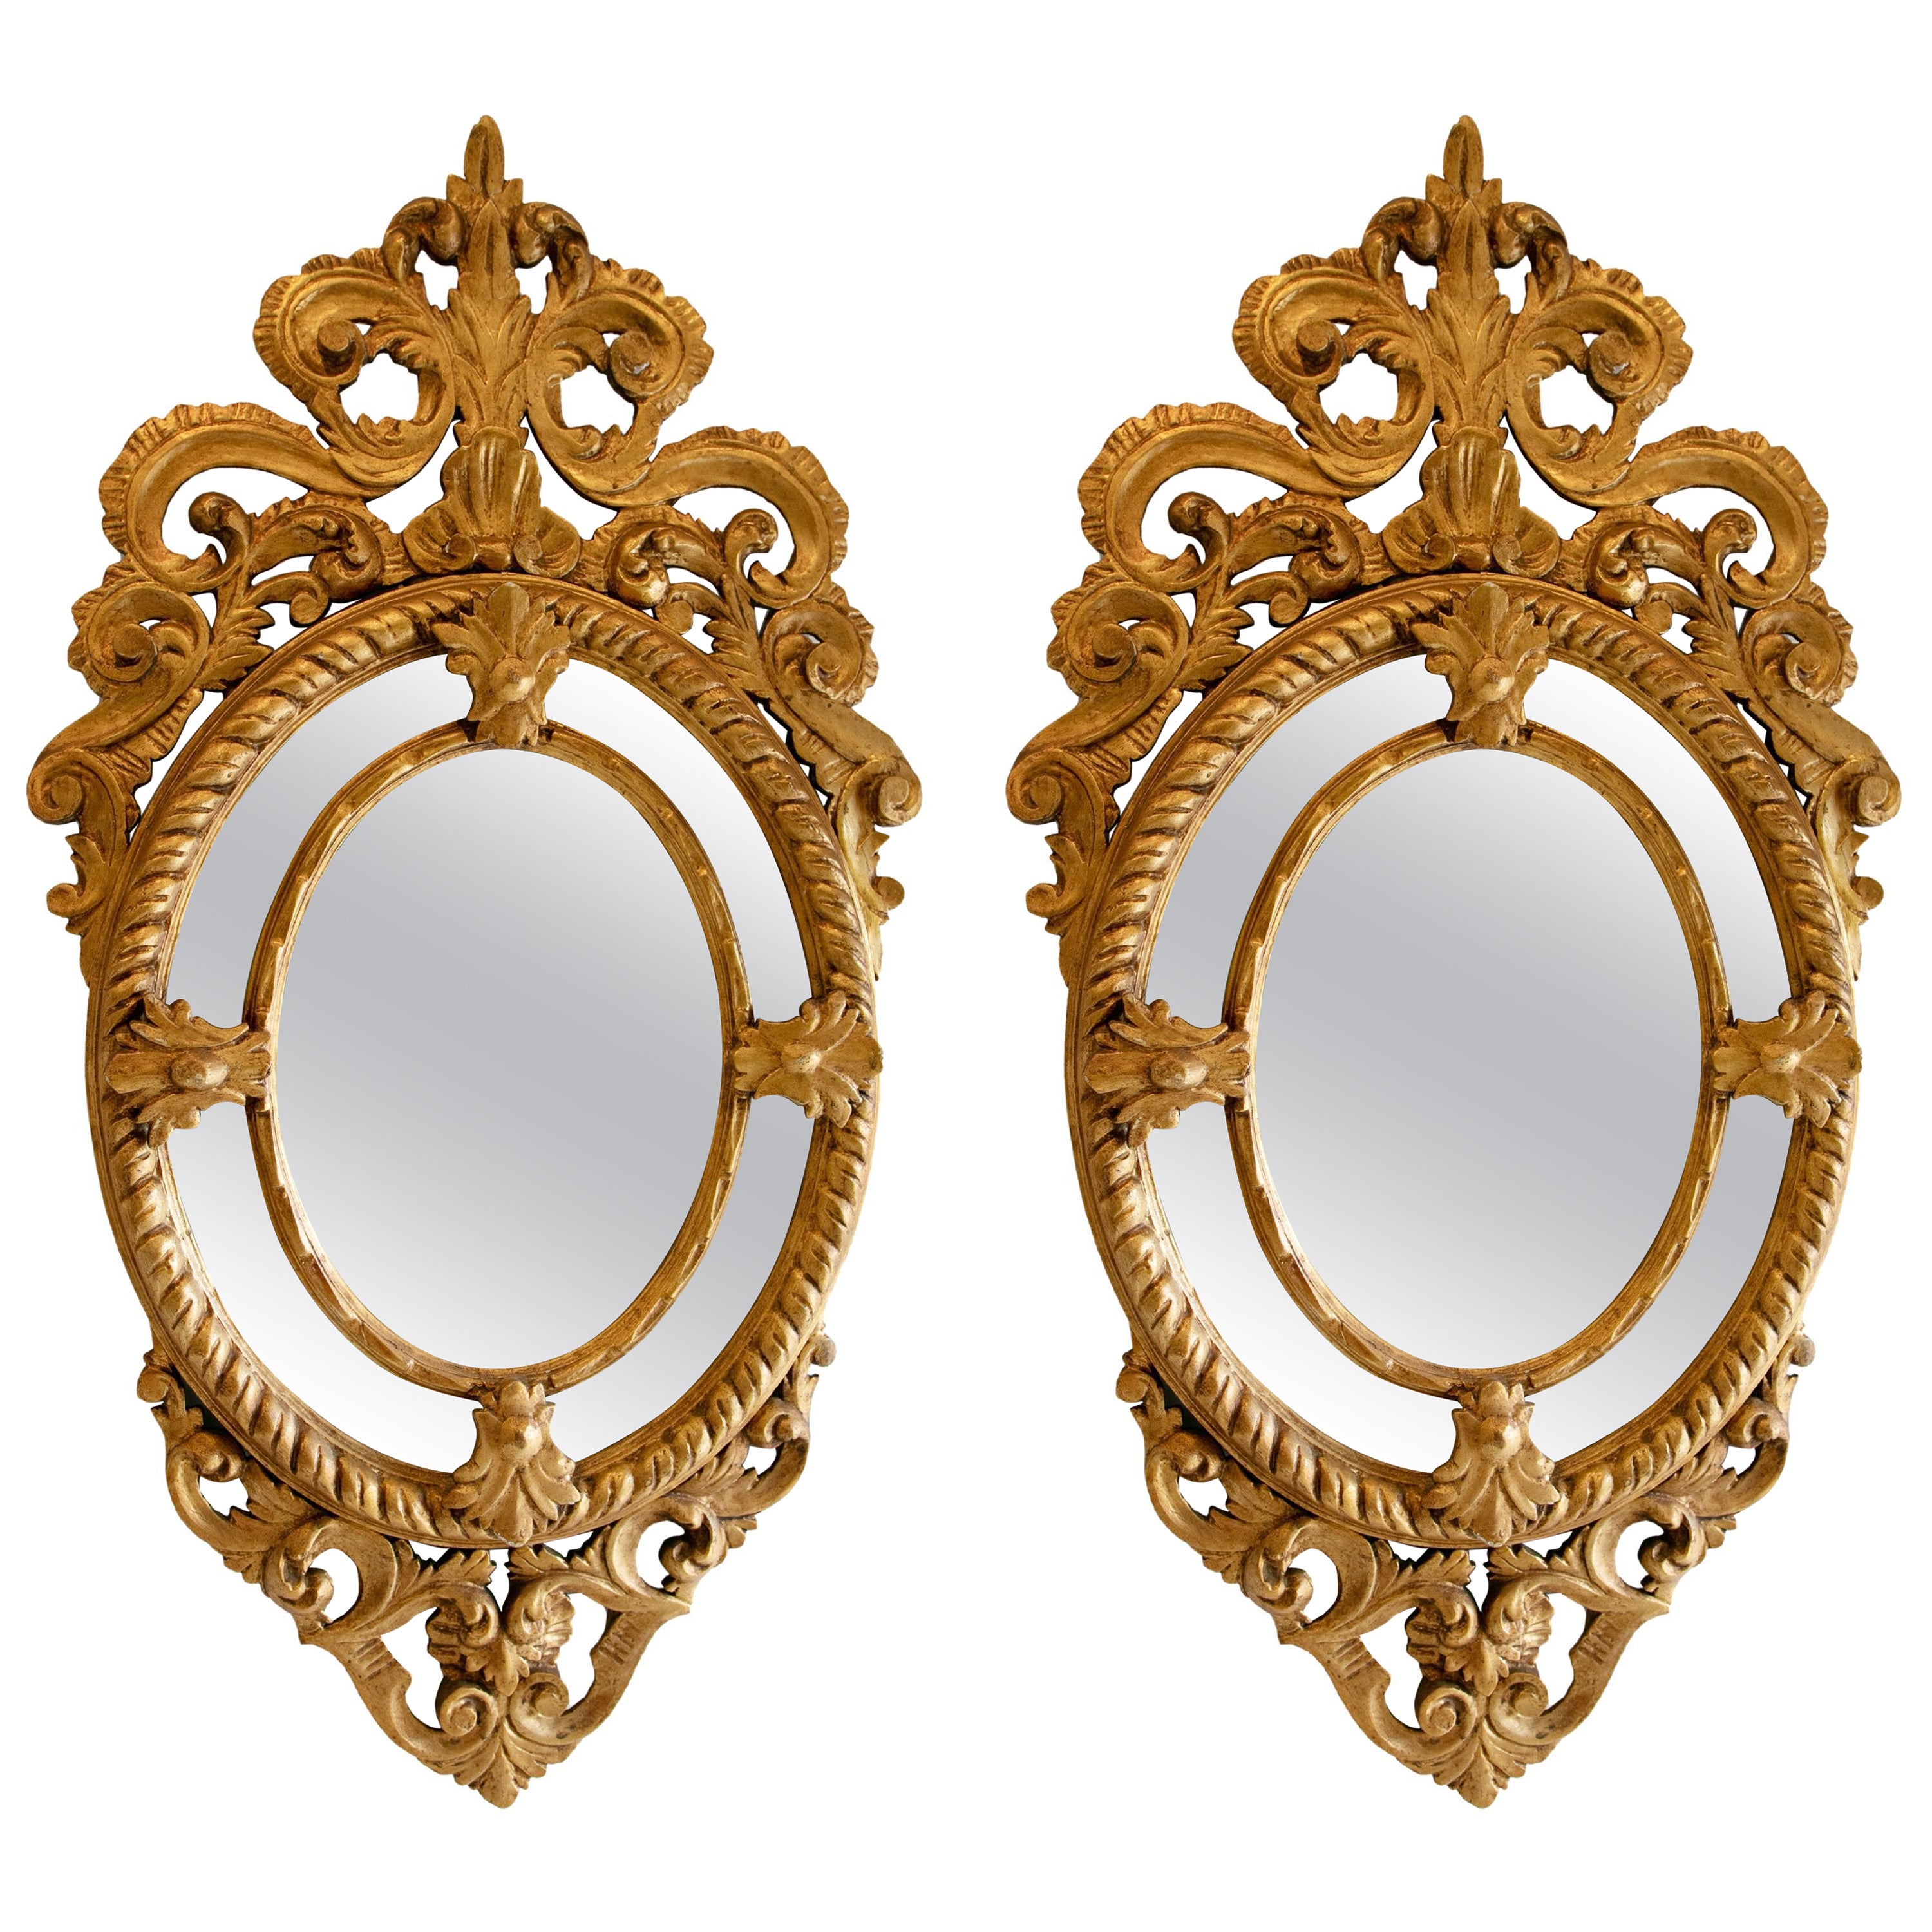 Paire de miroirs de forme ovale sculptés à la main et dorés